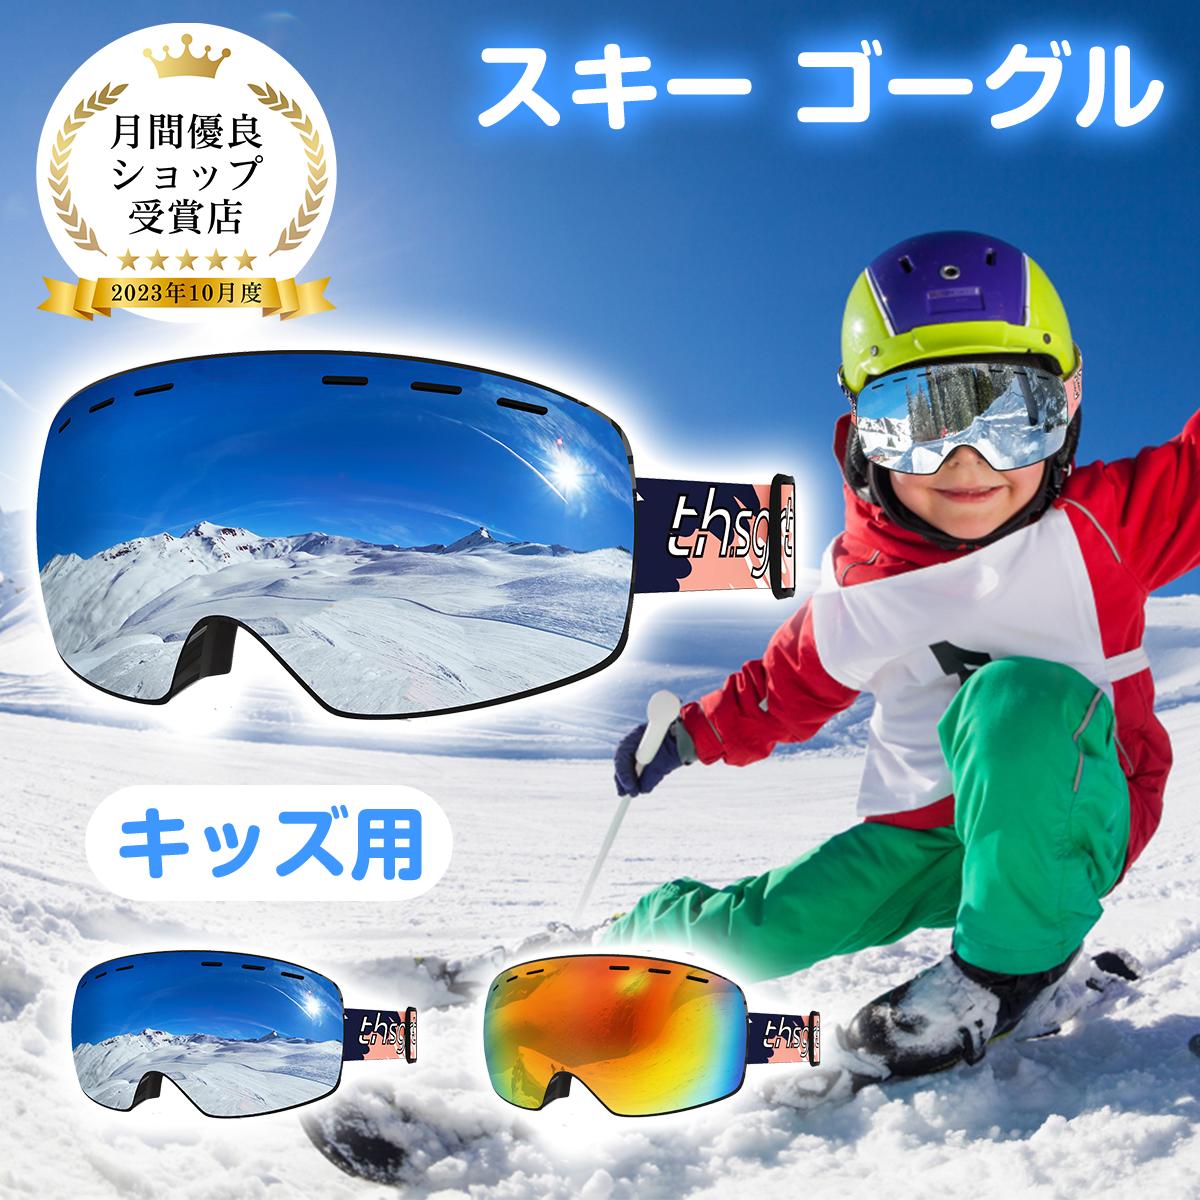 スキーゴーグル 2色 子供用 アップグレード 広視野球面レンズ 曇り防止 紫外線防止 軽量 耐衝撃 男女 適用 スキー用のスポーツゴーグル 贈り物